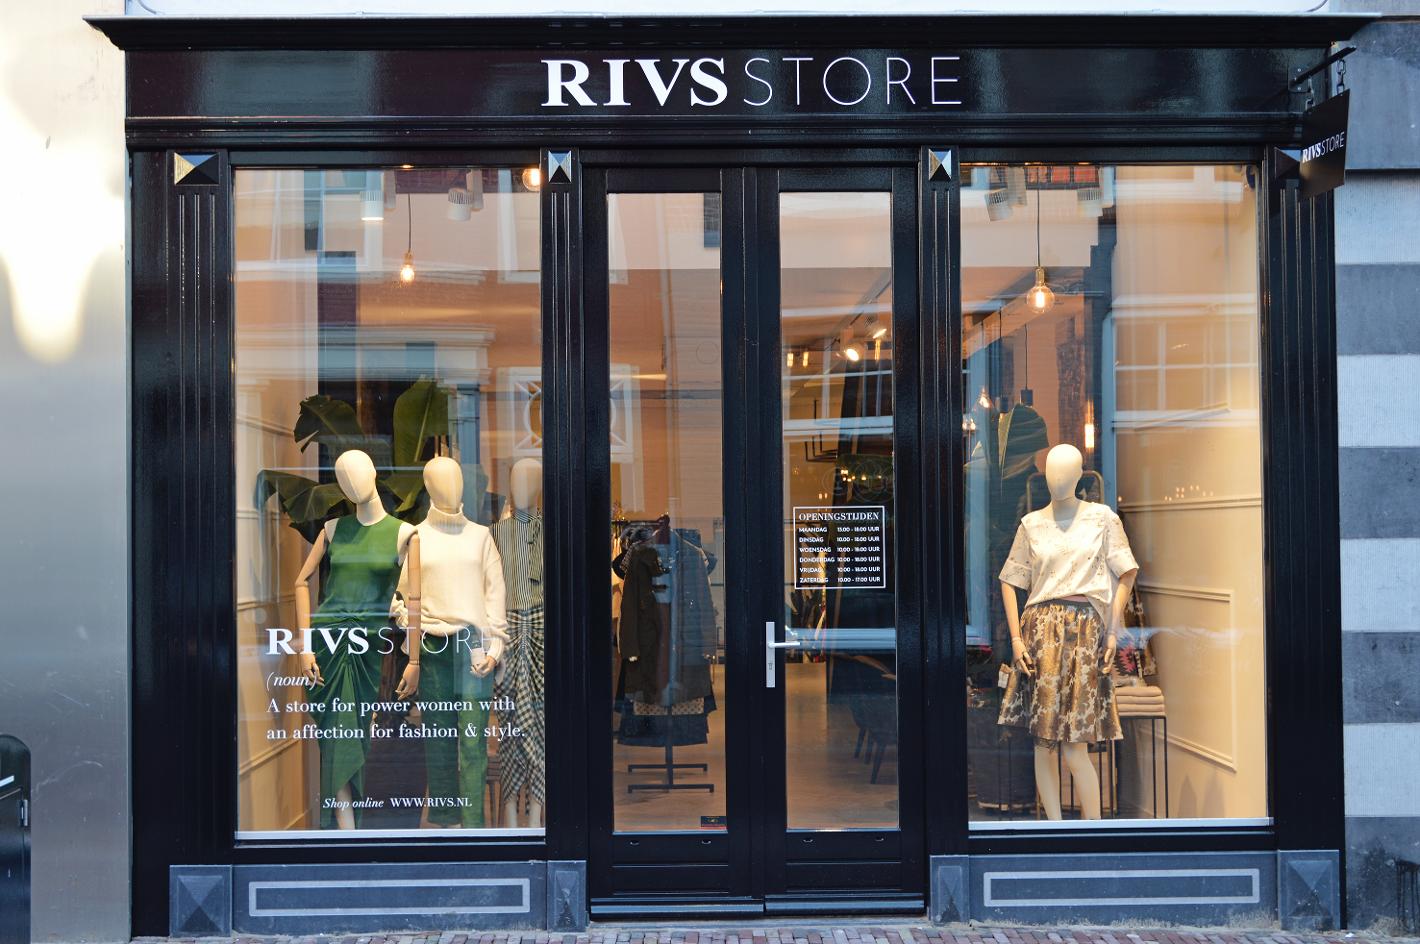 Foto RIVS Store in Alkmaar, Winkelen, Mode & kleding - #1